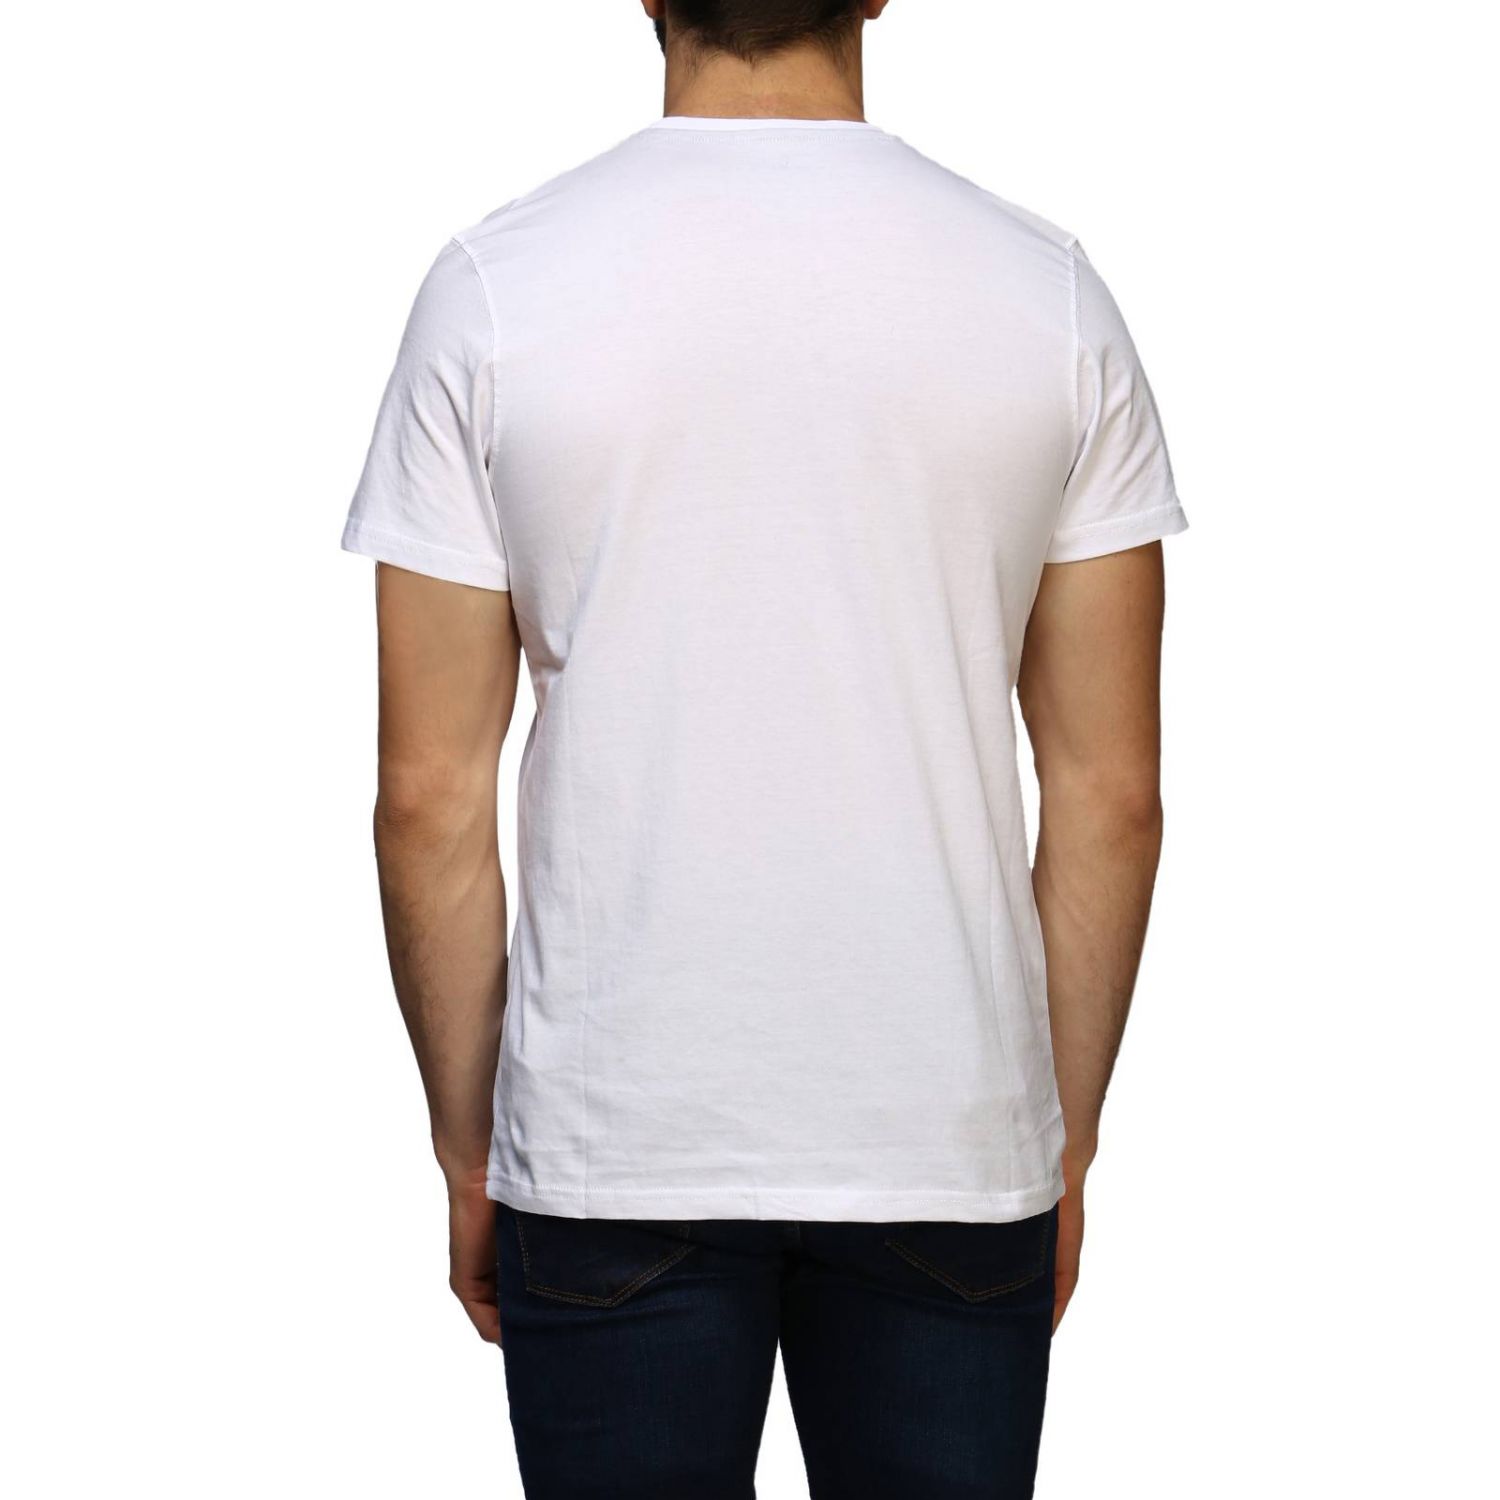 New Era Outlet: T-shirt men | T-Shirt New Era Men White | T-Shirt New ...